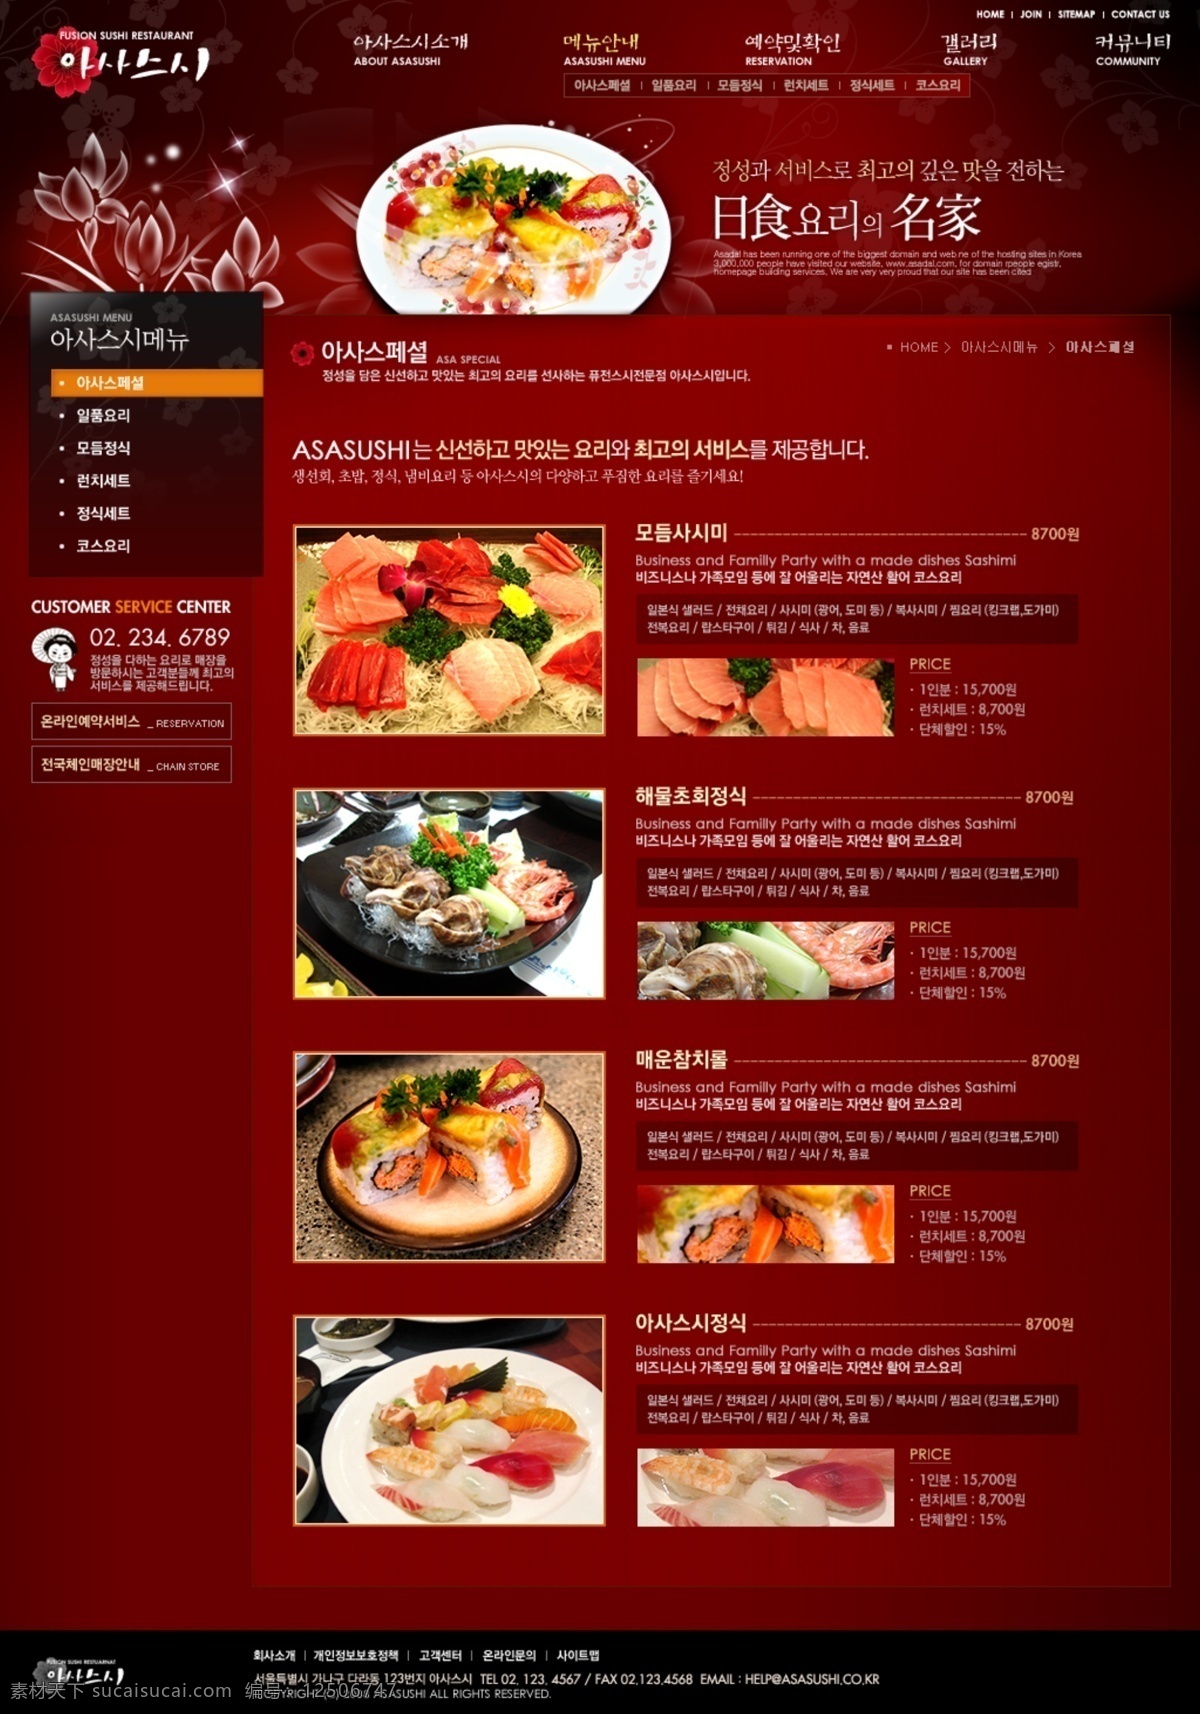 韩国 海鲜 料理 美食 餐饮 网页 psd模板 分层模板 海鲜料理 饮食模板 网站 模板 web 界面设计 韩文模板 网页素材 其他网页素材